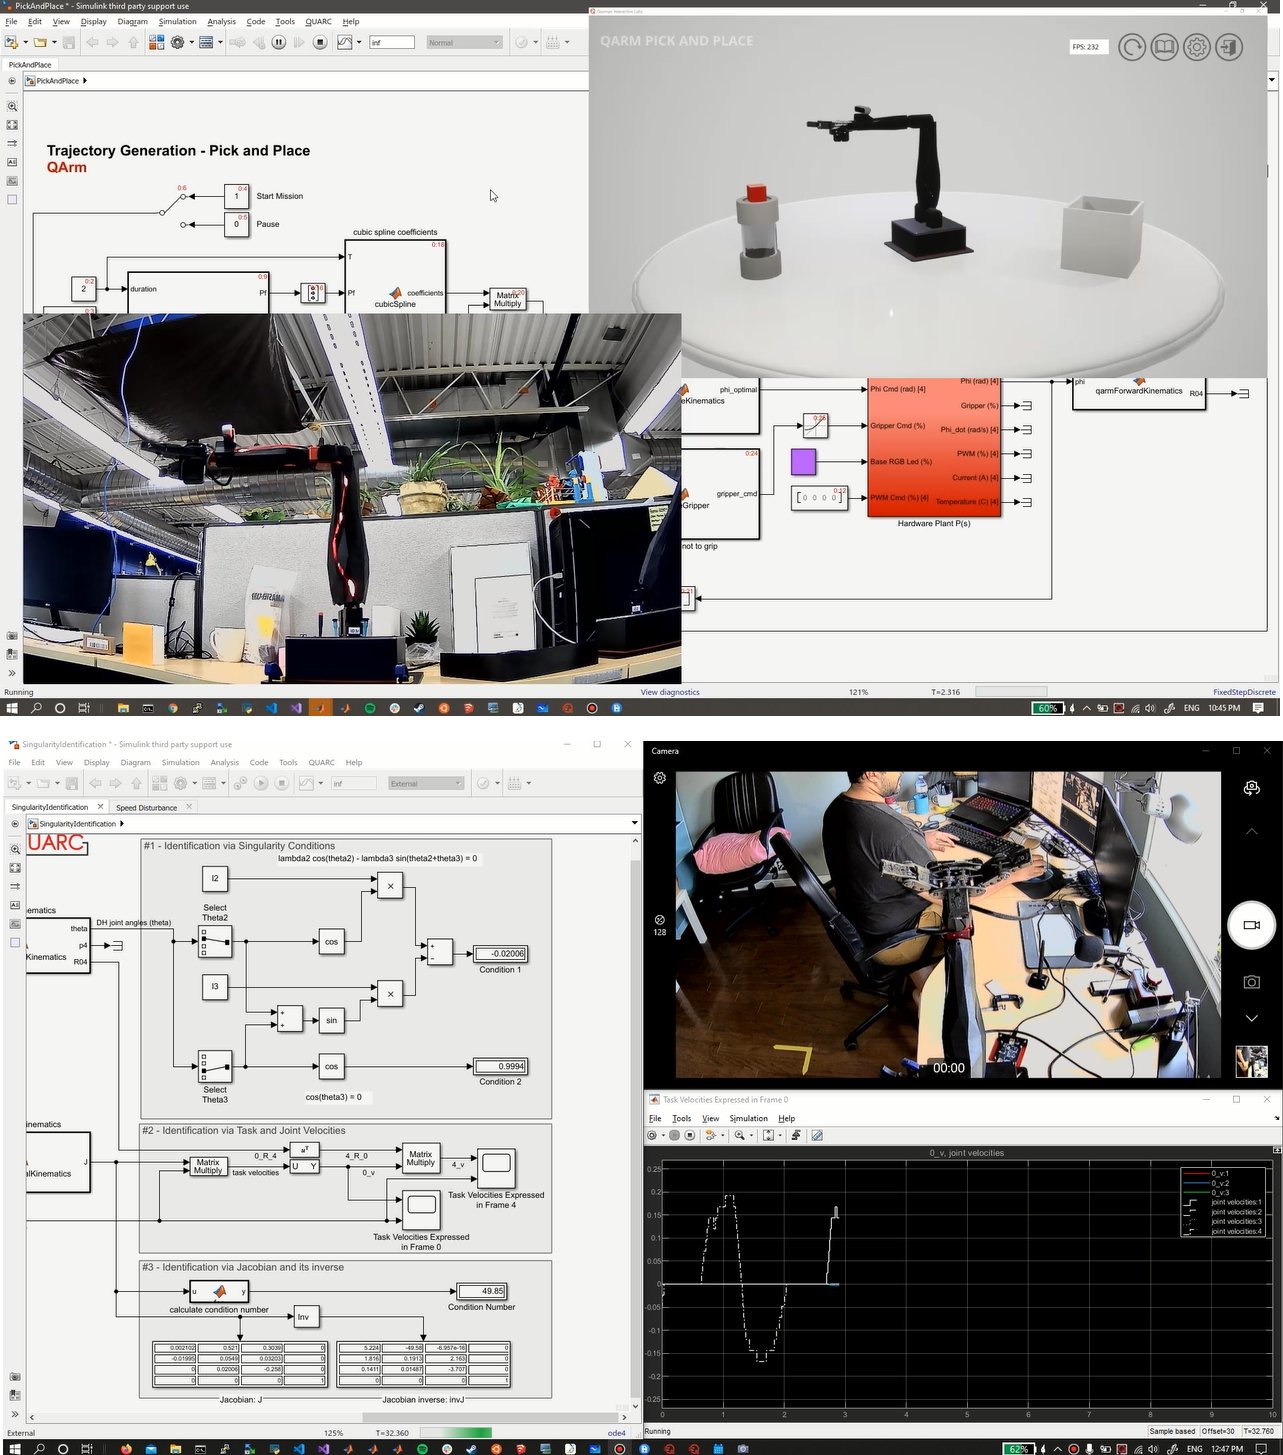 Módulo de control en tiempo real p/vincular Robots de Quanser con MATLAB/Simulink. Licencia para 1 puesto de trabajo QUARC Robotics